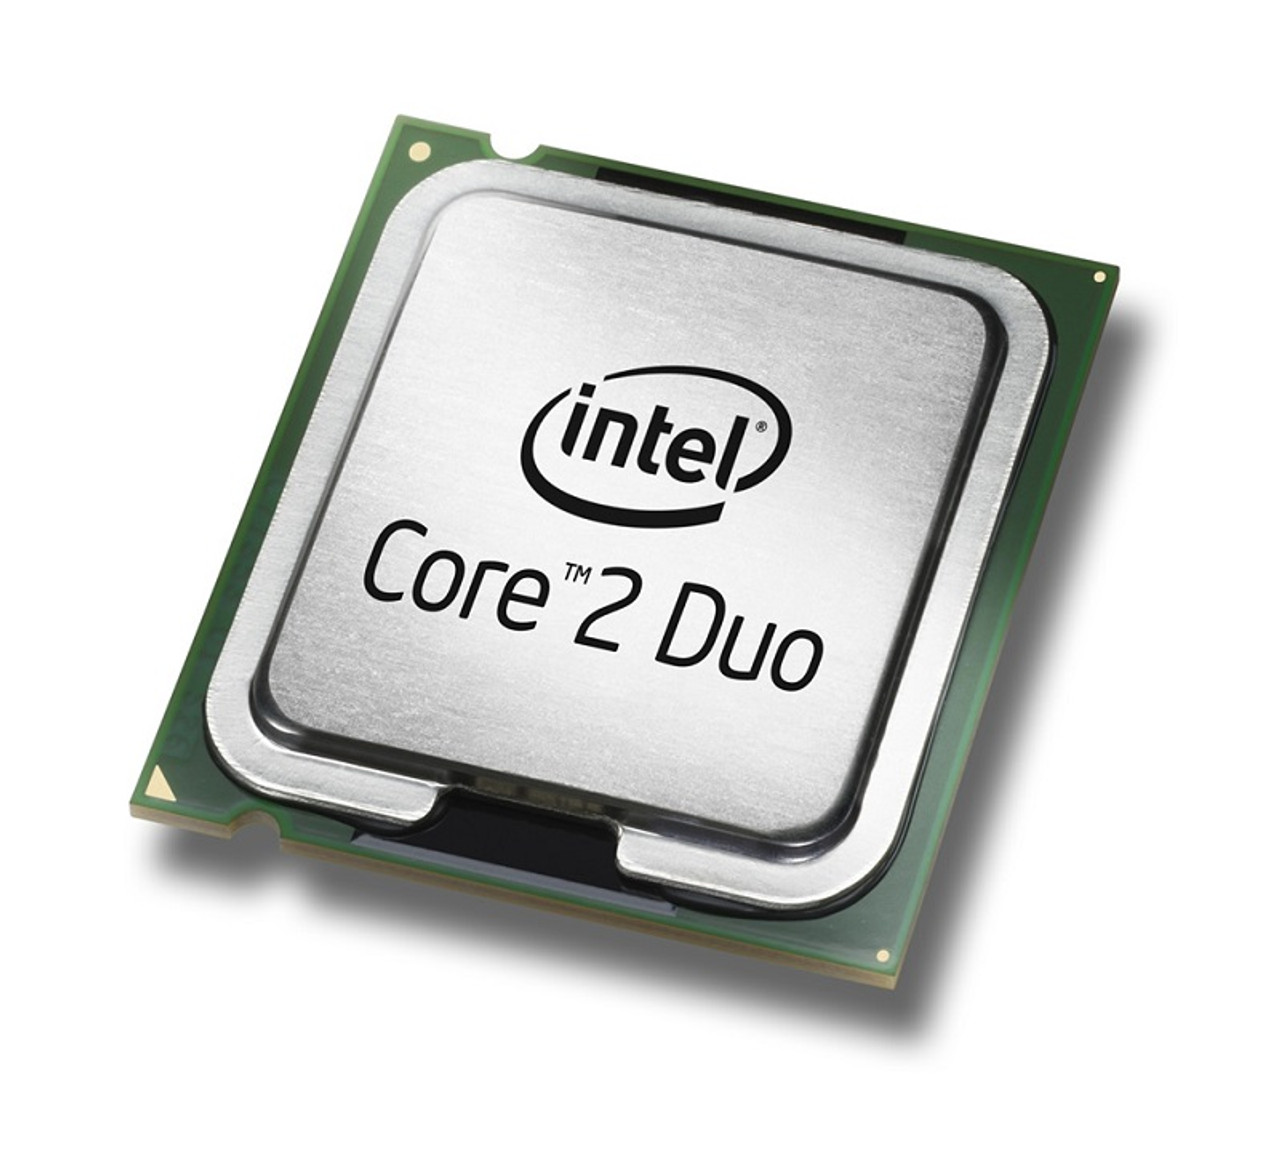 AT80571PH0773ML - Intel Core 2 Duo E7500 2.93GHz 3MB L2 Cache 1066MHz FSB  Socket LGA-775 45NM 65W Processor